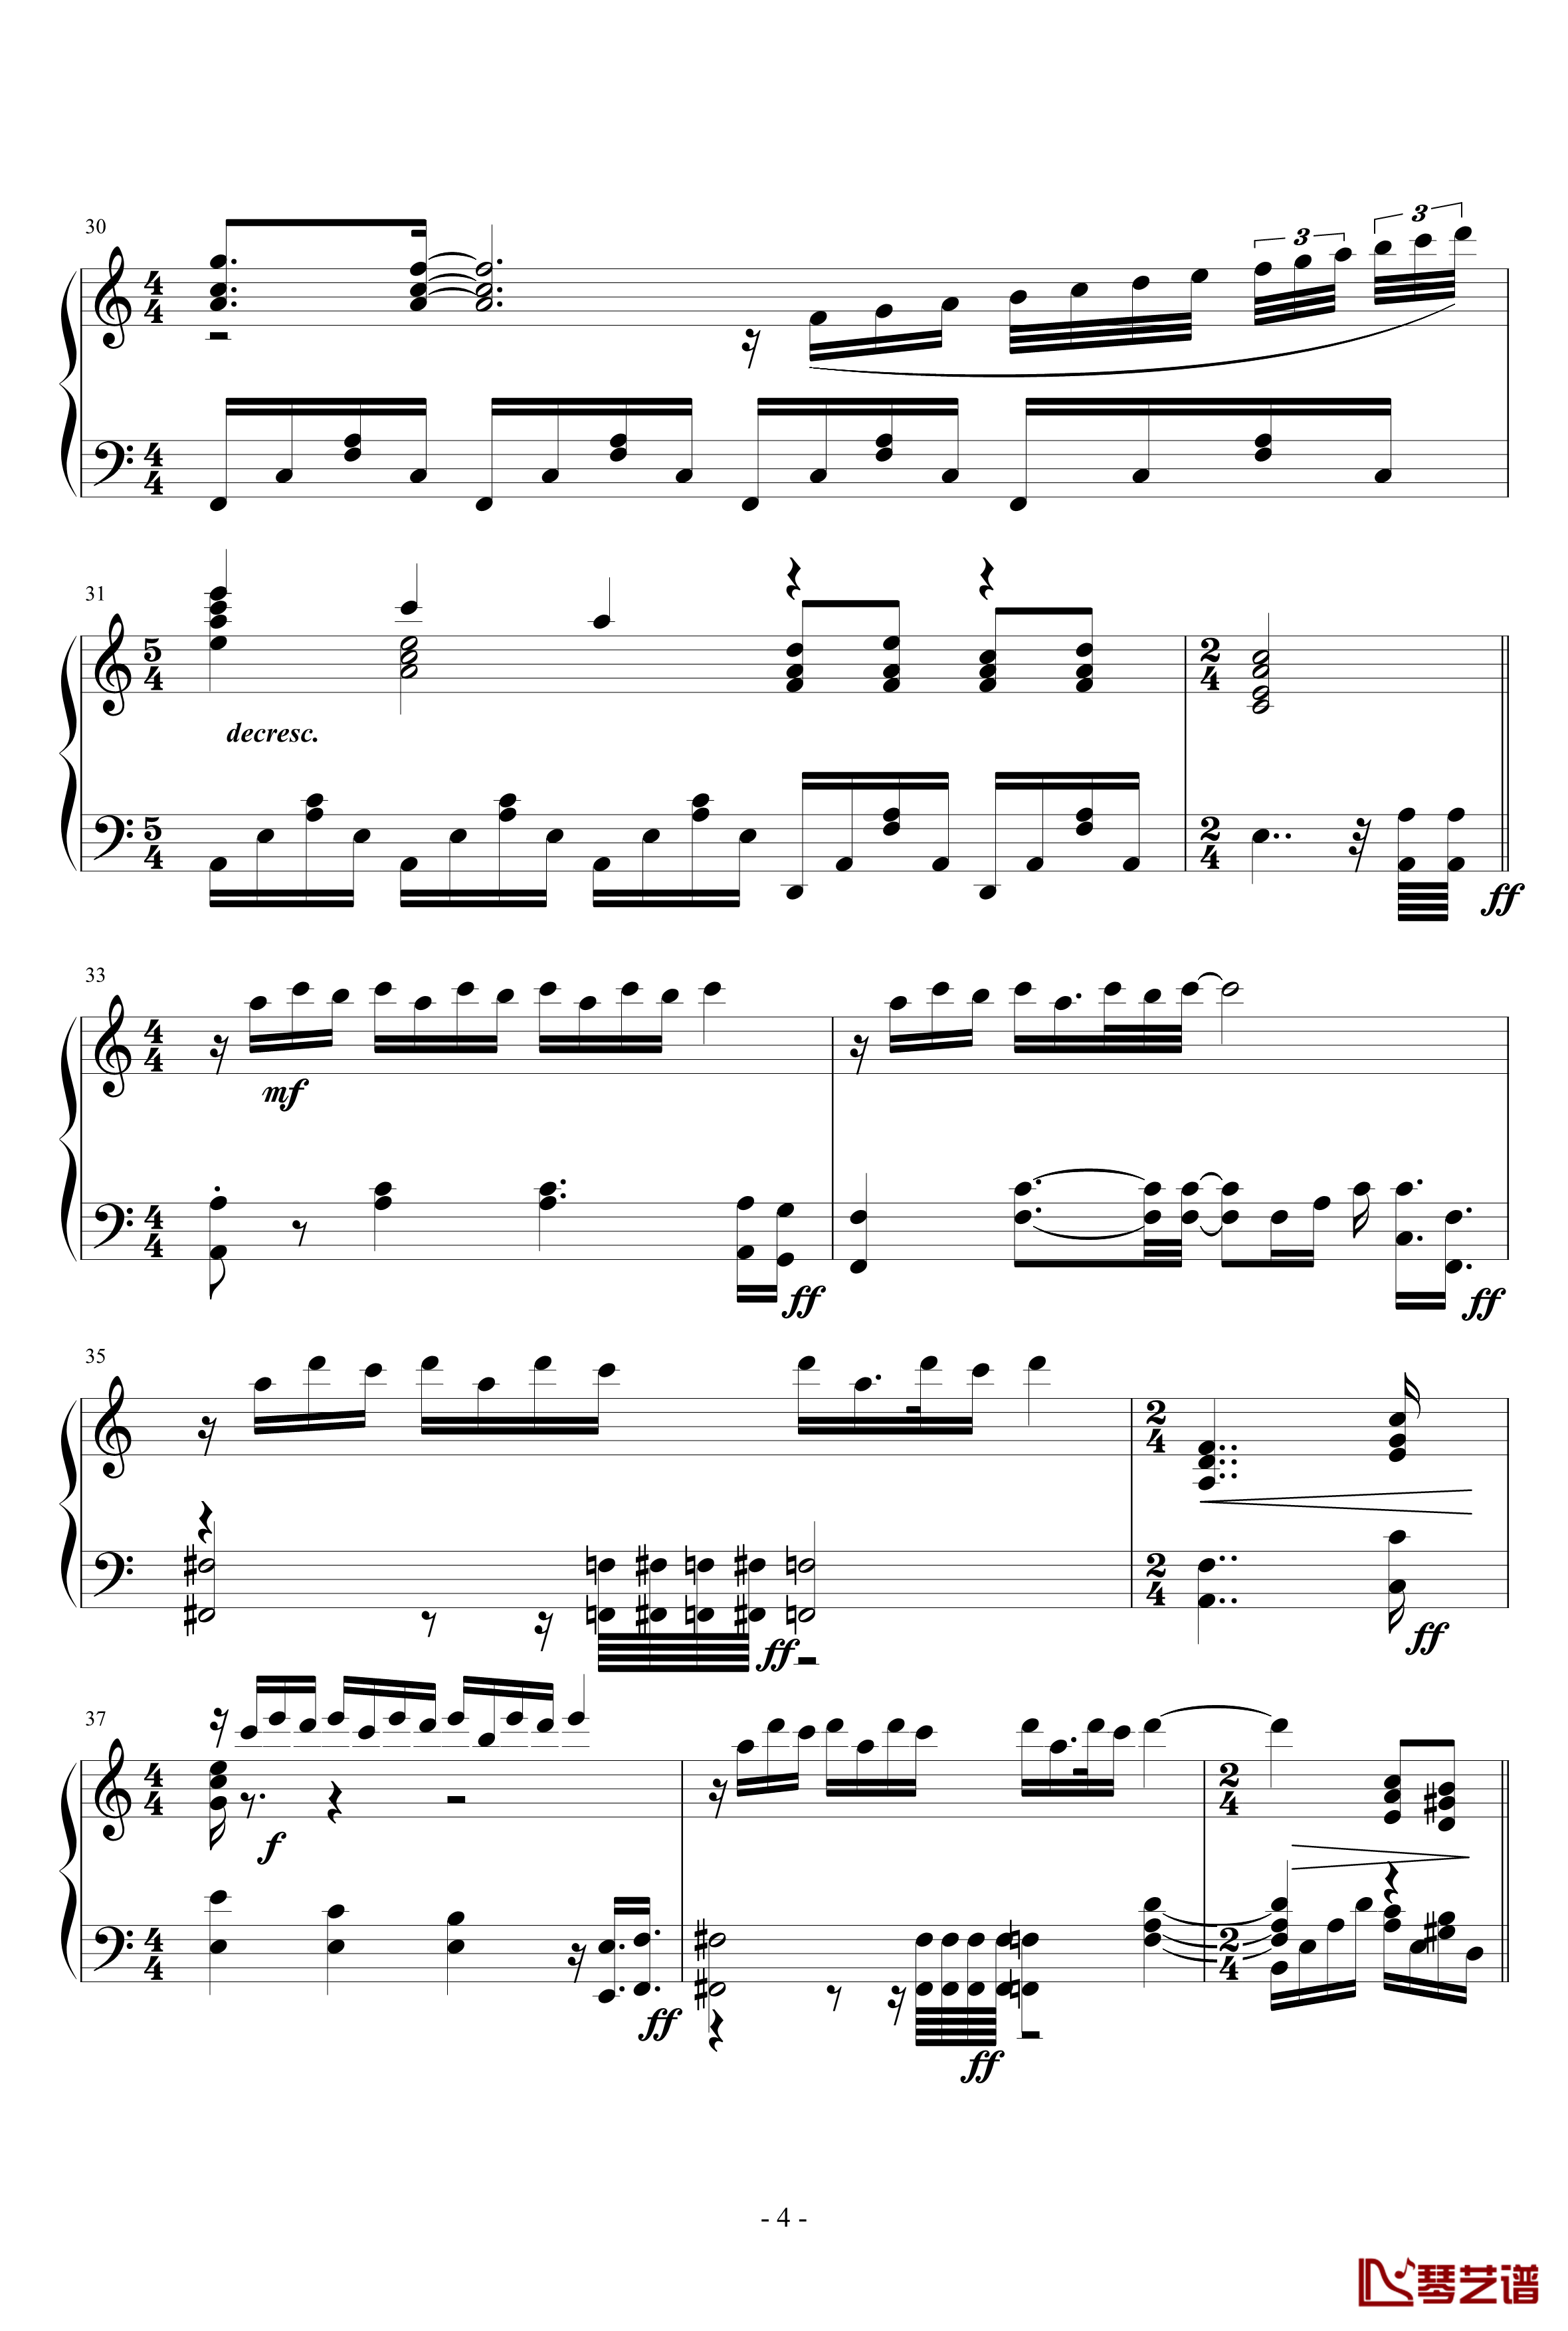 La Ballata Di Sacco E Vanzetti钢琴谱-死刑台的旋律主题曲-Ennio Morricone4